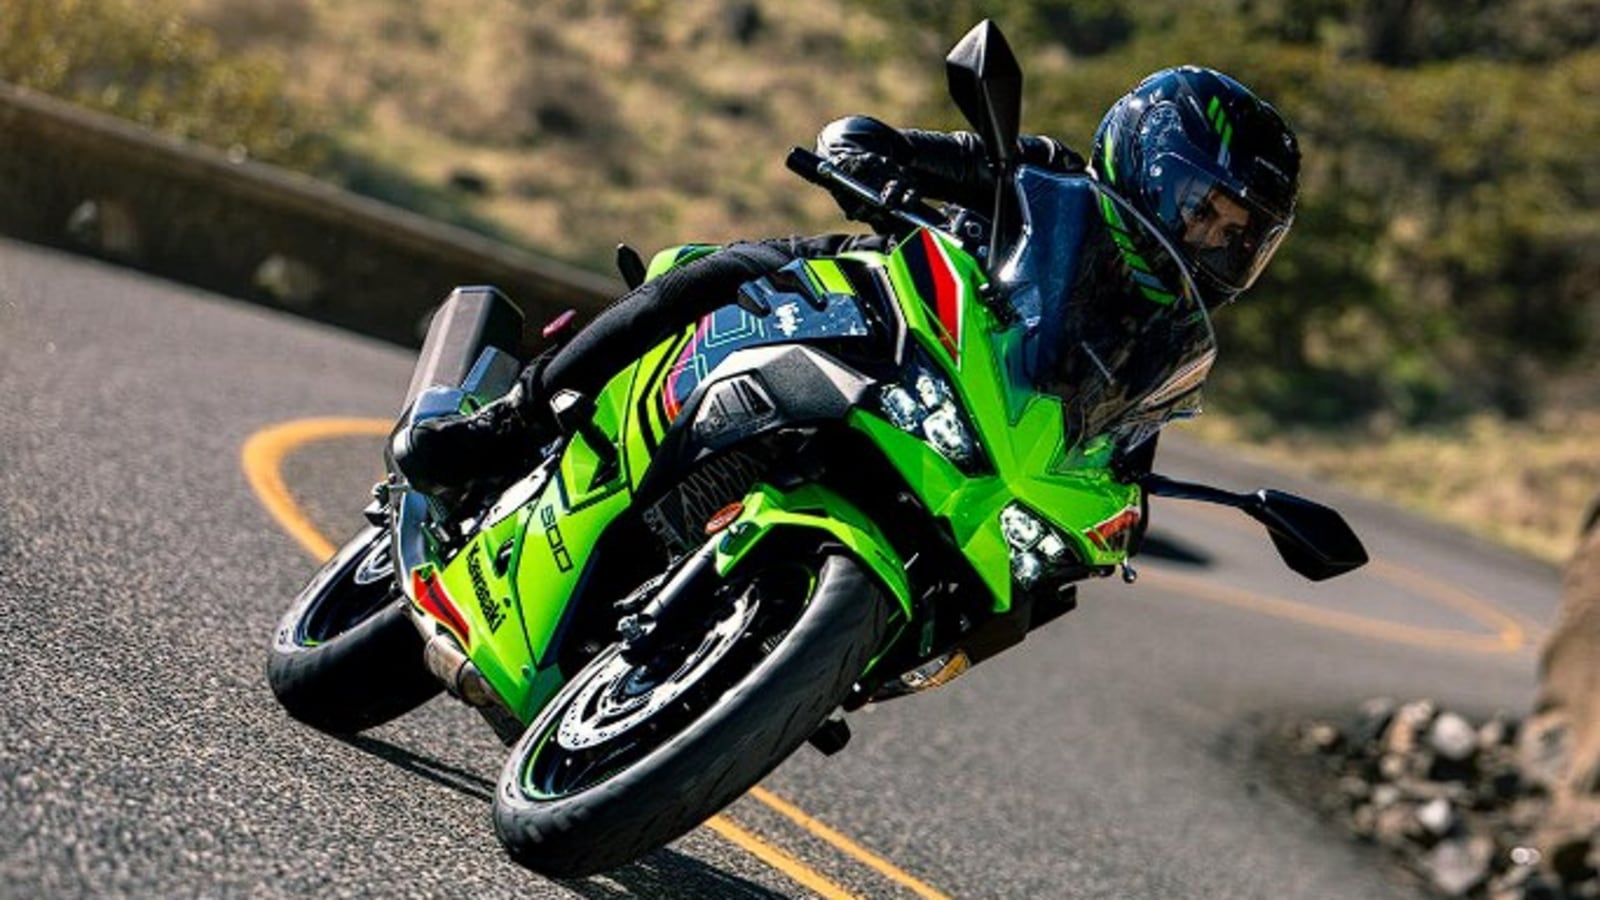 2024 Kawasaki Ninja 500 teased for India. Launch soon